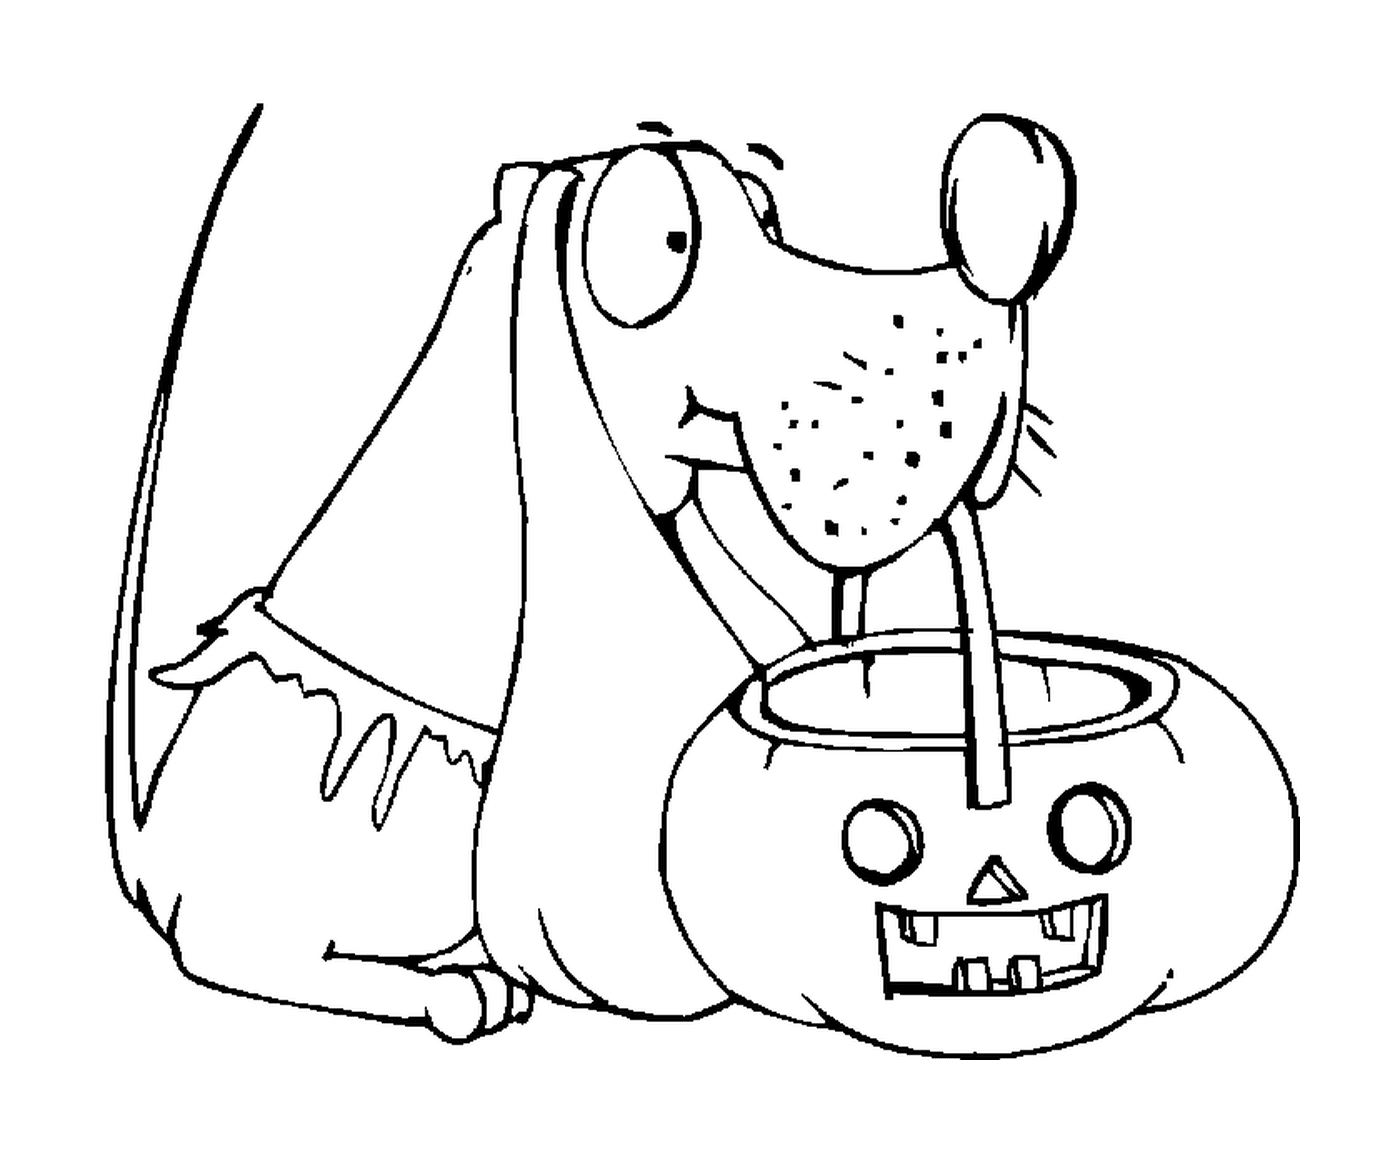  Dog with a Halloween pumpkin 